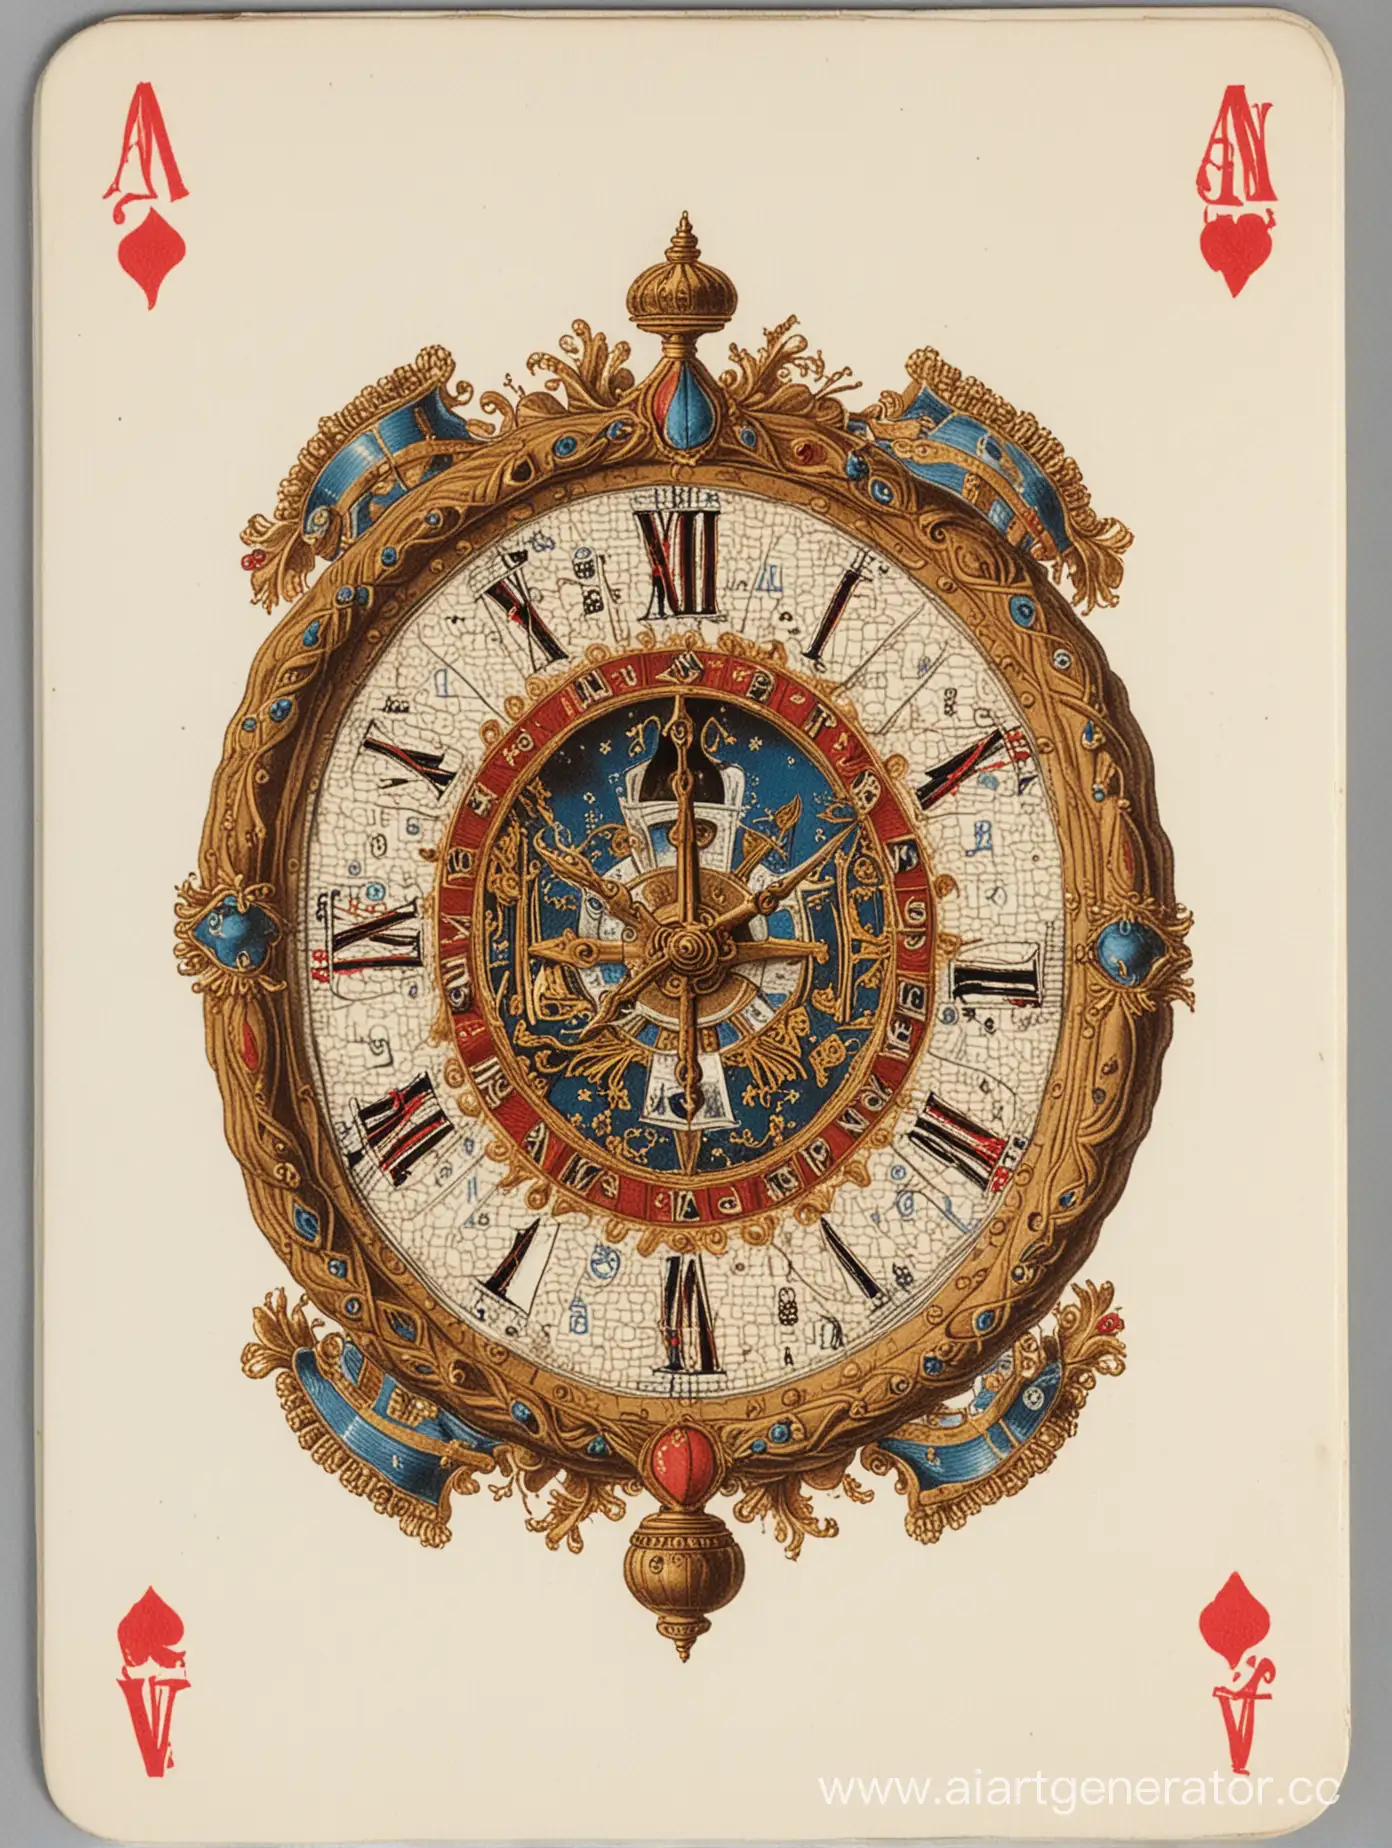 рубашка игровой карты изображающая часы  времен наполеона